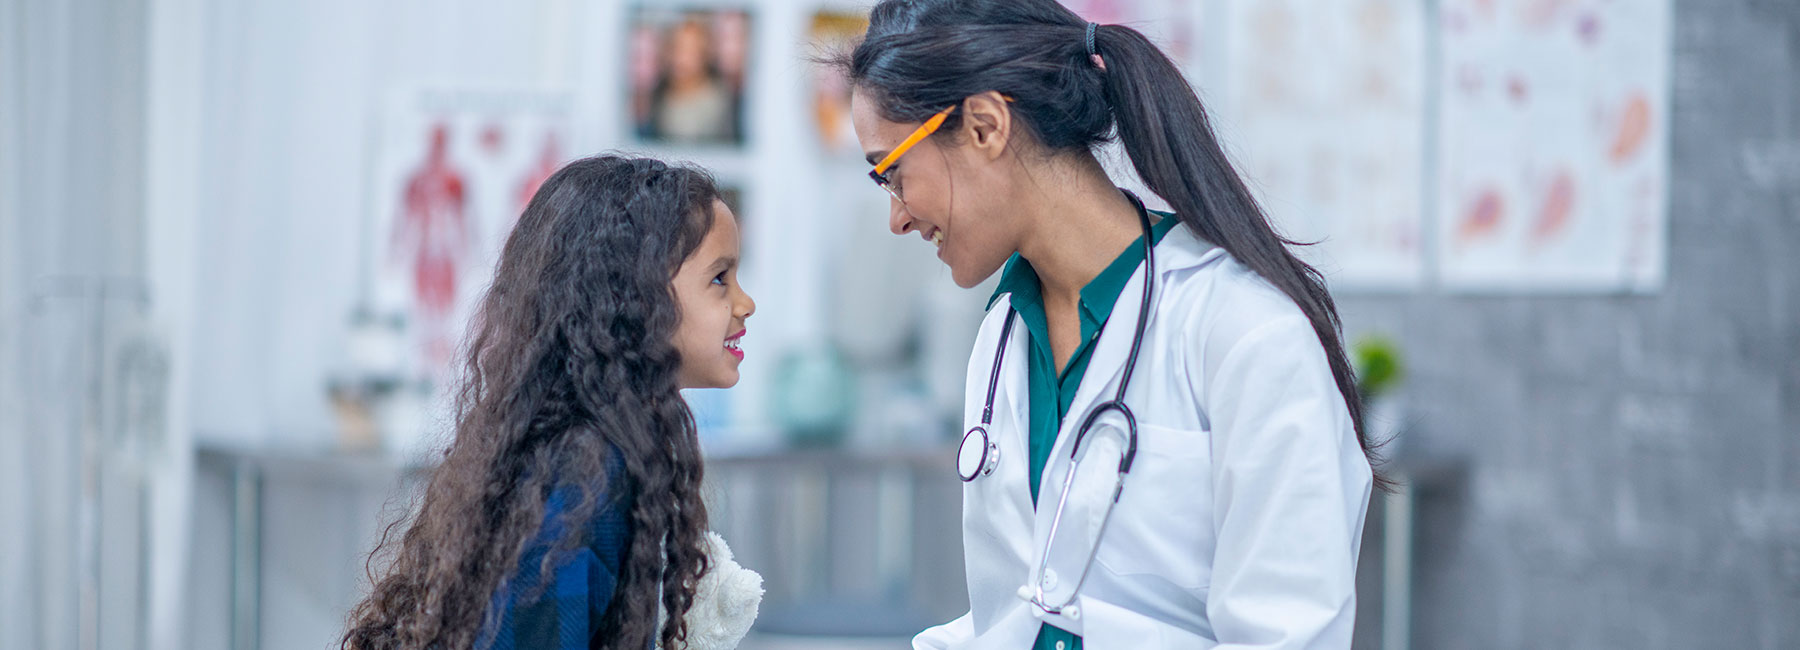 Une jeune fille discute avec une docteure